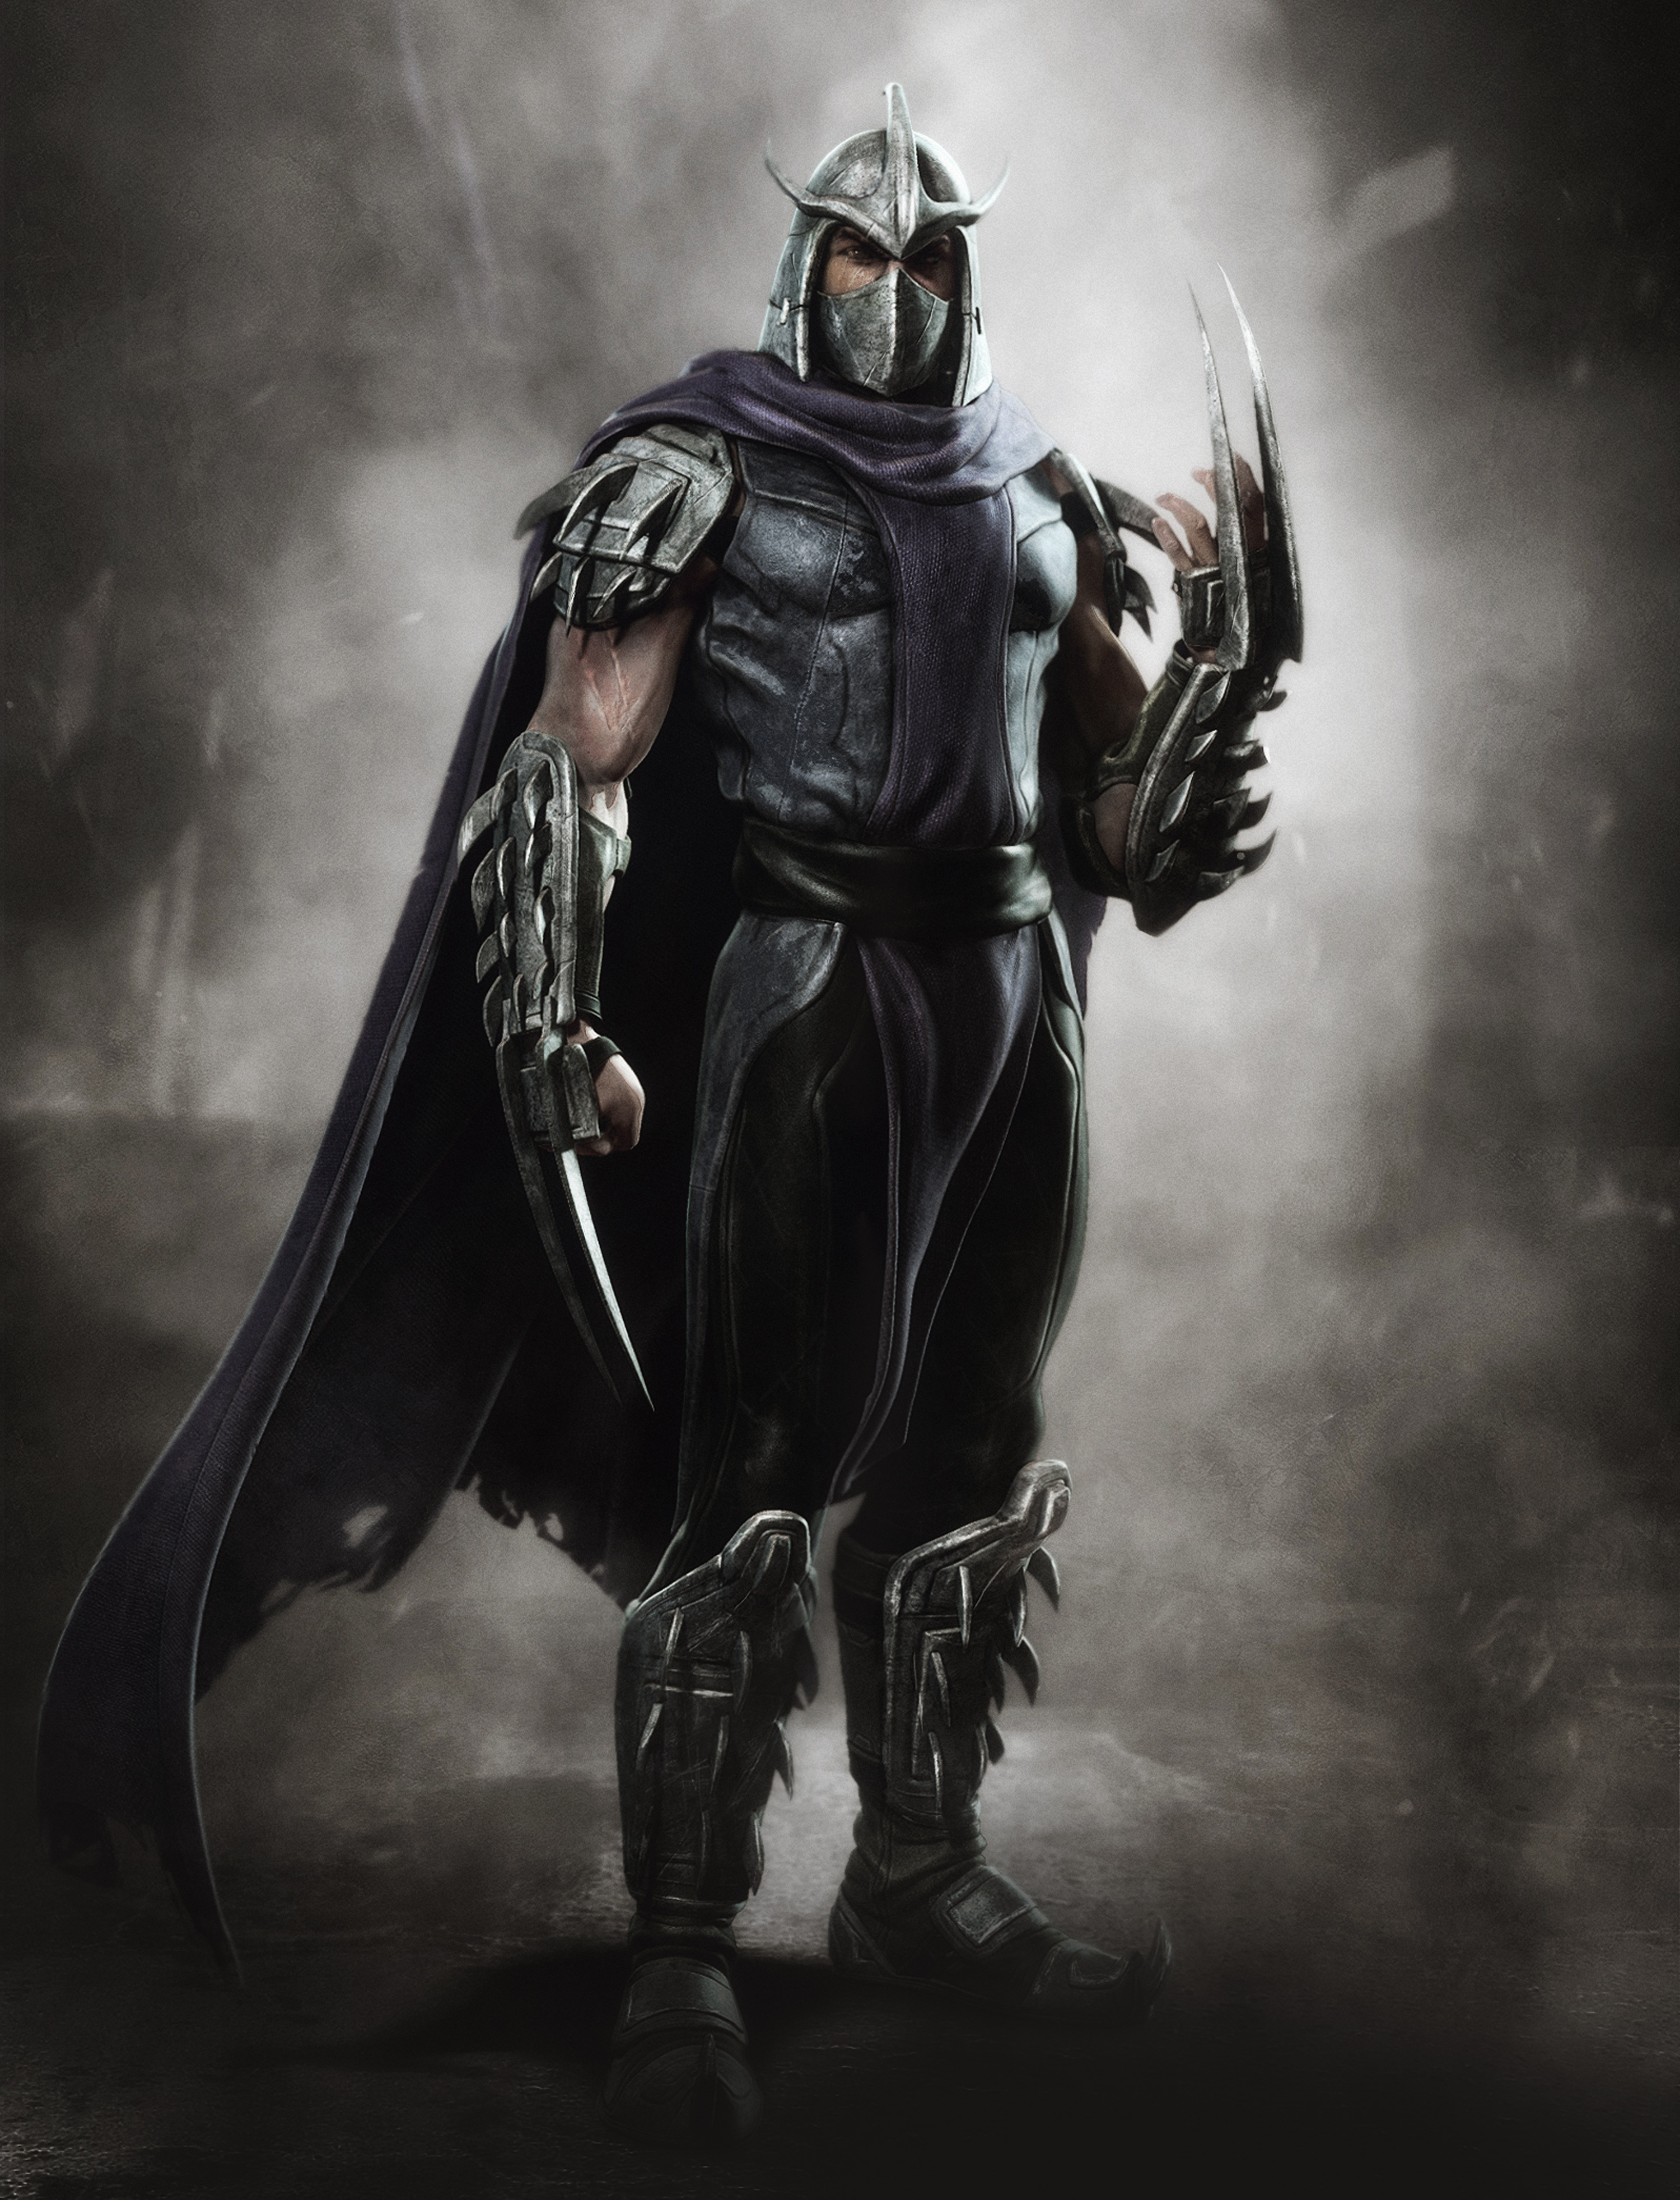 TMNT: Mutant Mayhem Concept Art for Shredder's Canceled Appearance Revealed